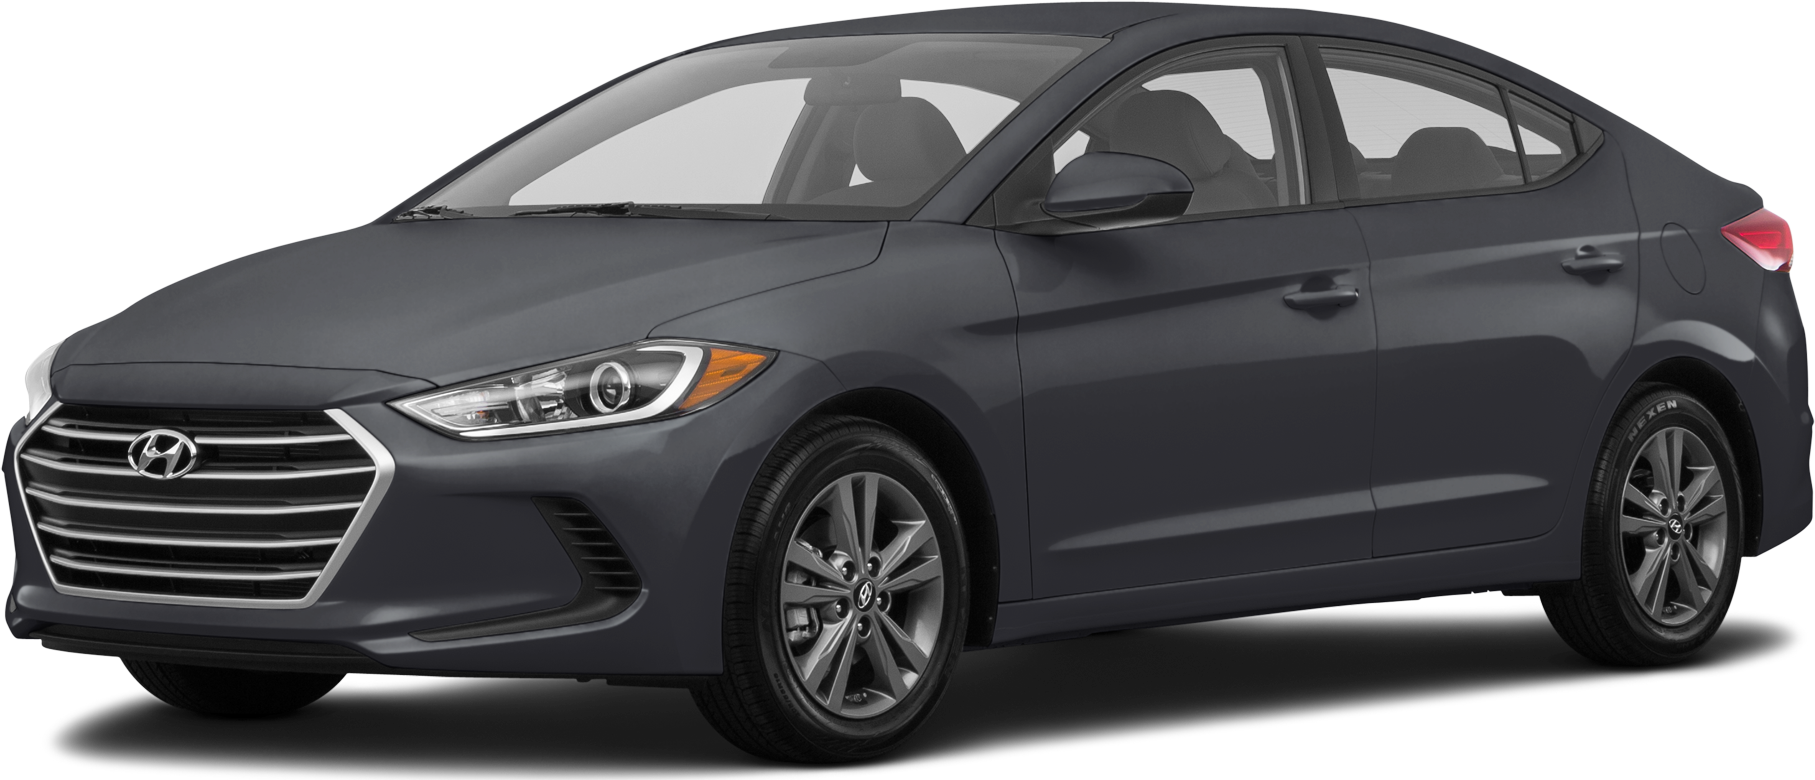 2017 Hyundai Elantra Specs And Features